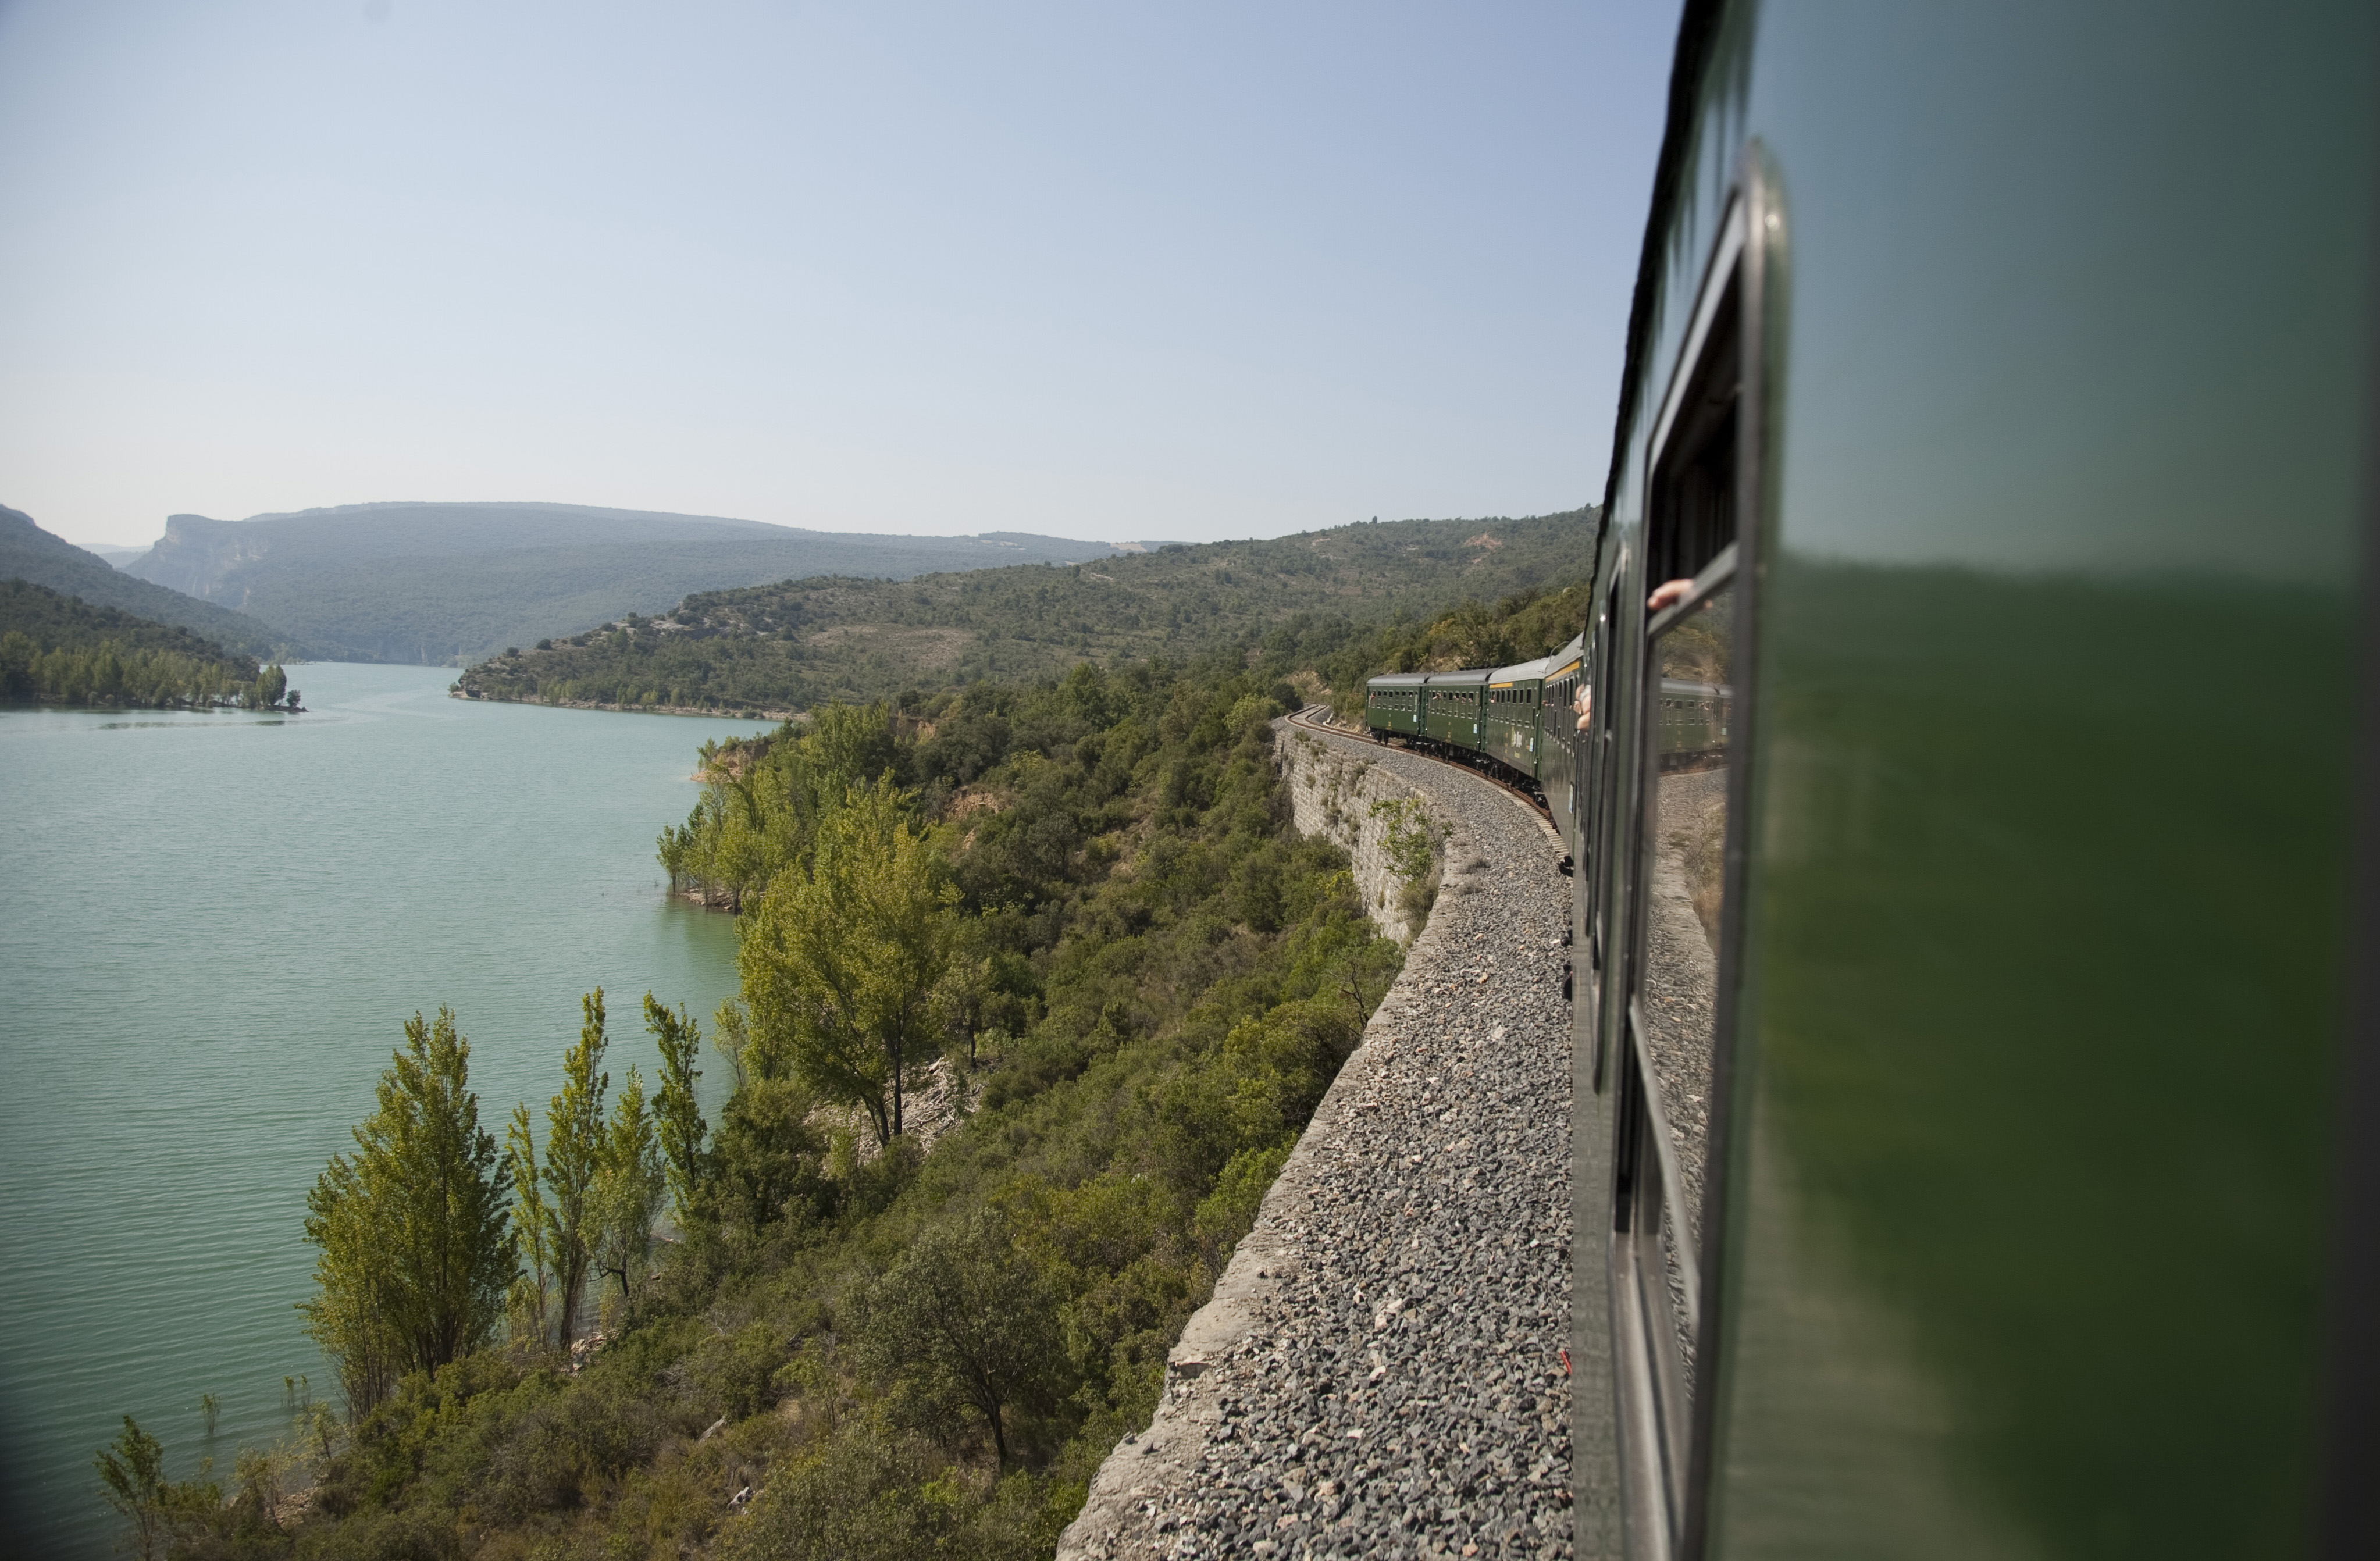 El tren i el magnífic paisatge vist durant el viatge / El tren y el magnífico paisaje vistos durante el trayecto